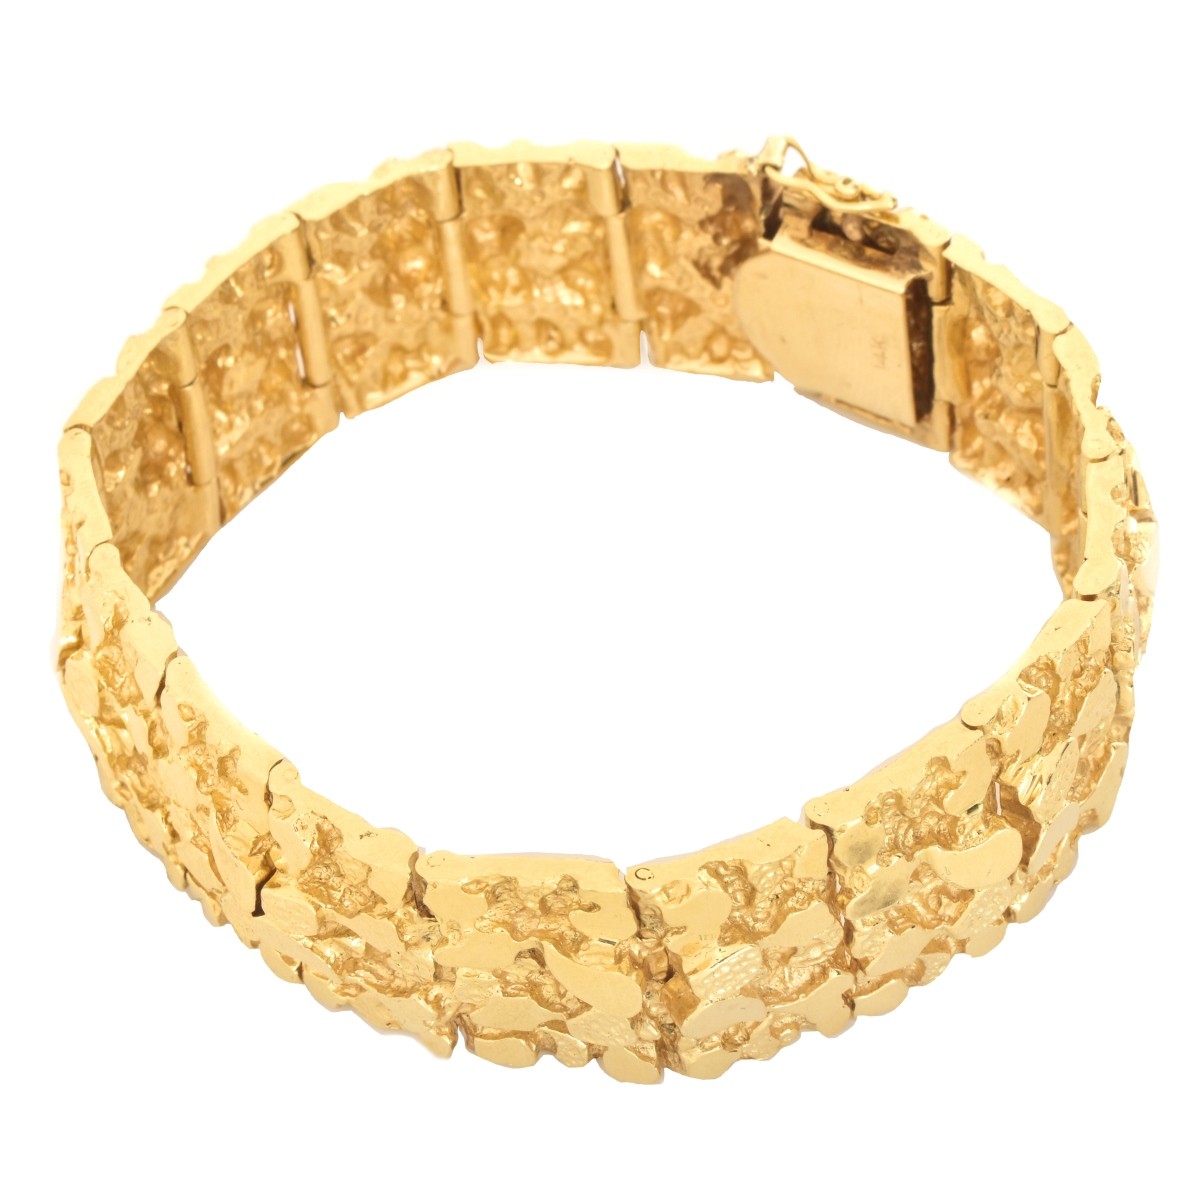 Man's 14K Gold Nugget Bracelet | Kodner Auctions